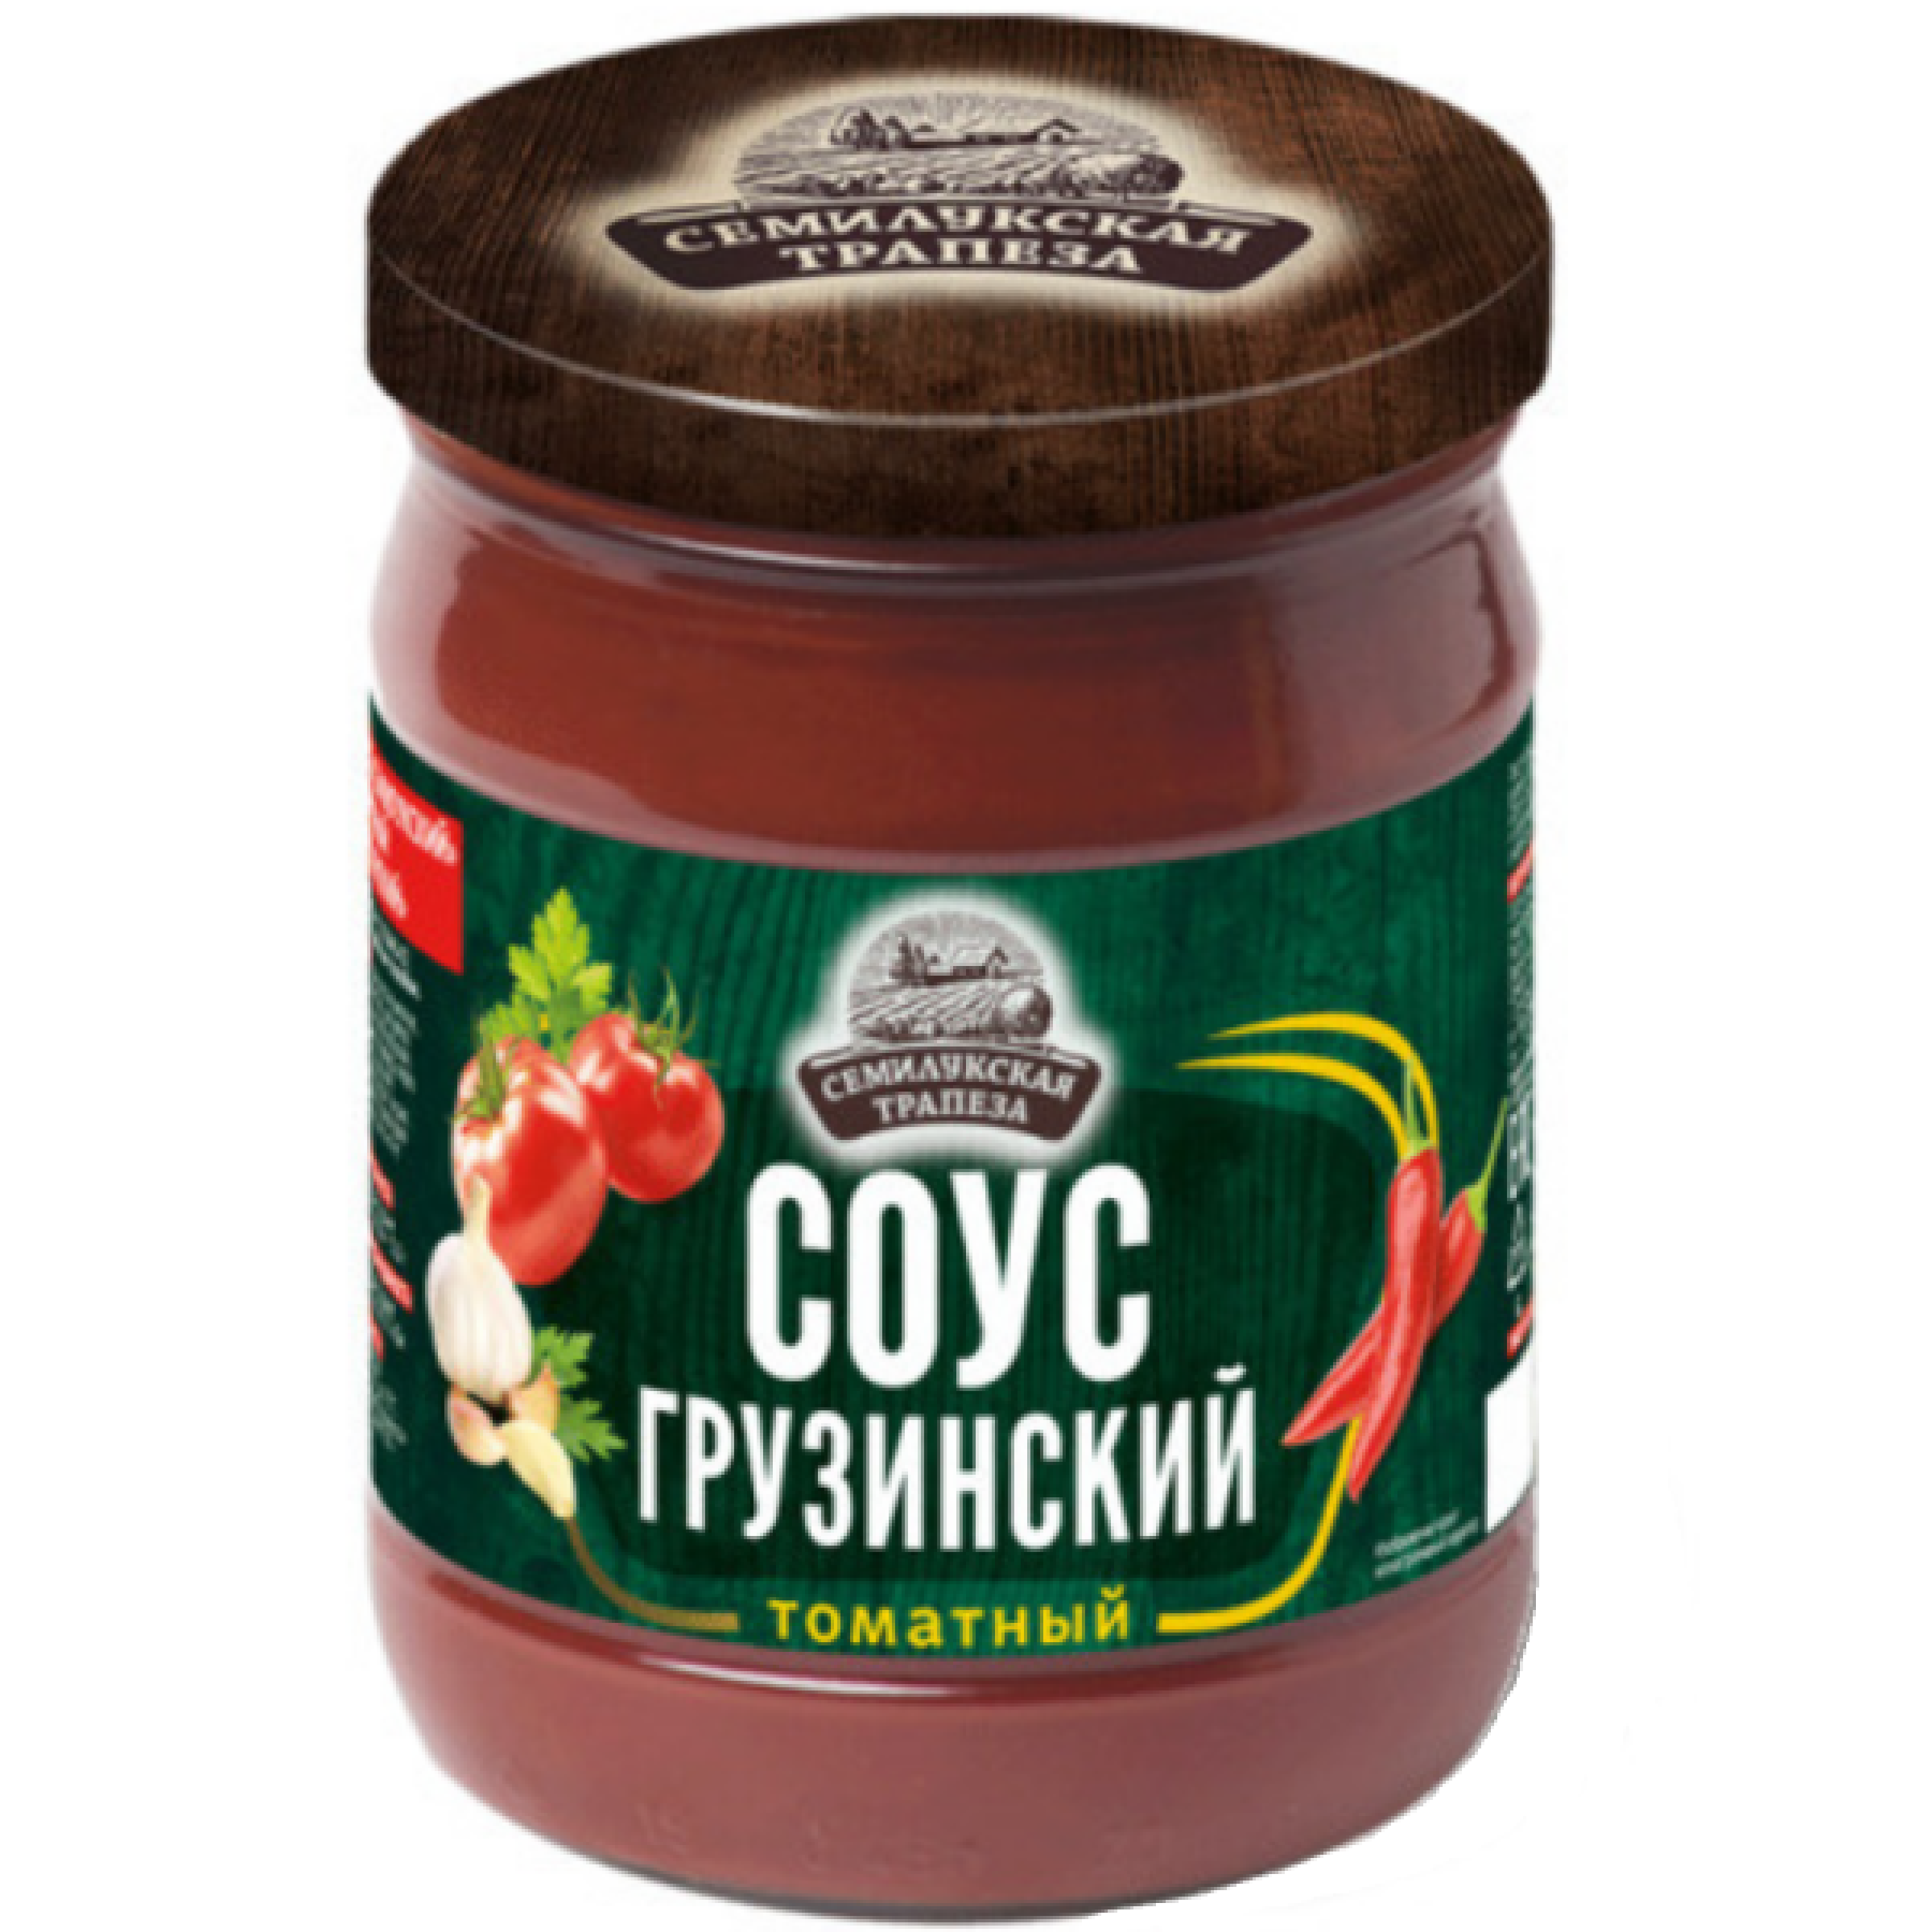 Соус томатный Грузинский Семилукская трапеза, 500гр.